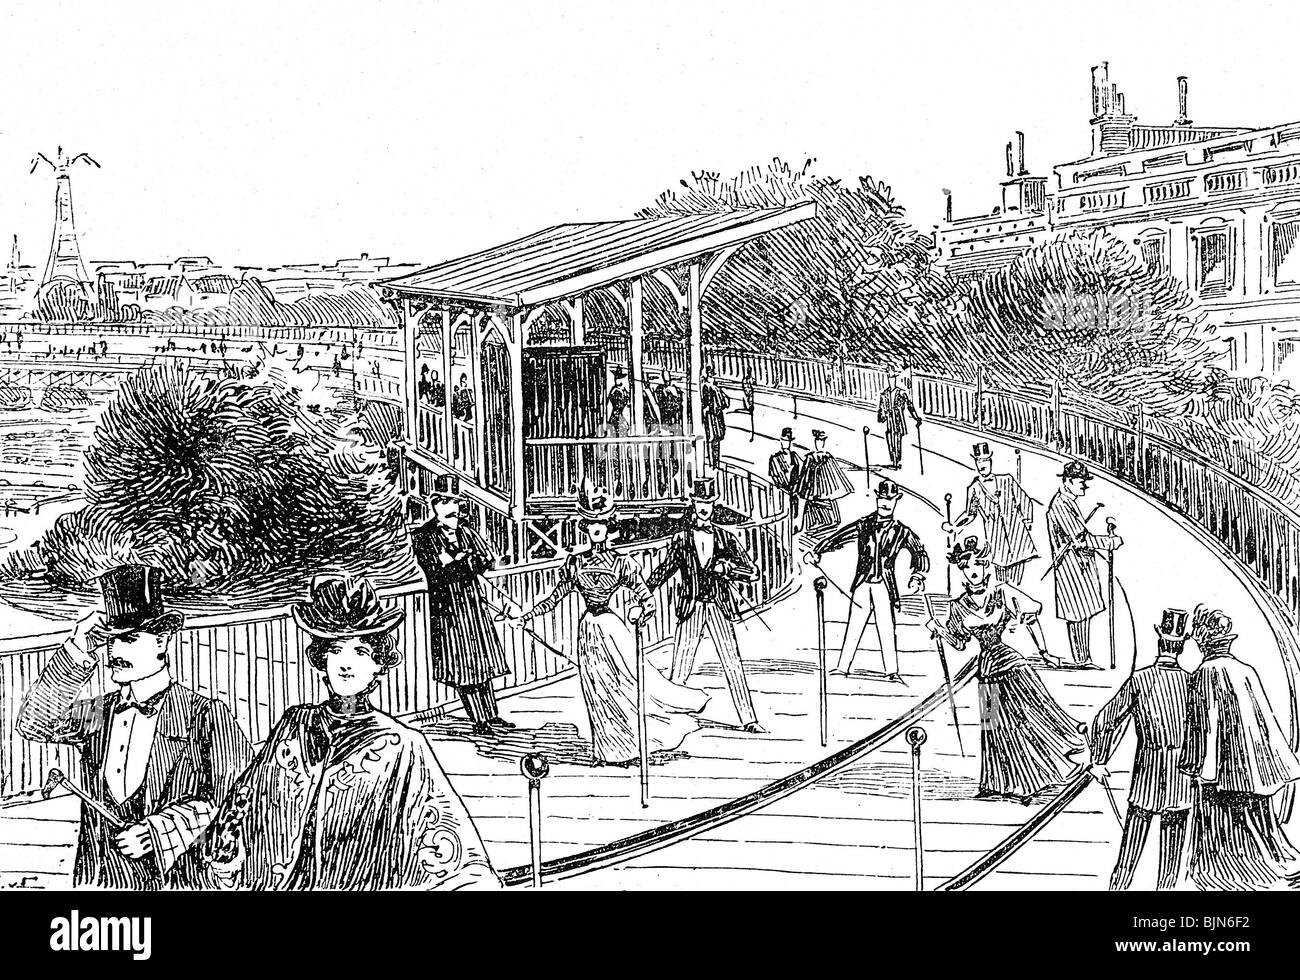 Mostre, esposizione mondiale, Parigi, 1900, Trottoir roulant (marciapiede volvente), incisione del legno dopo la foto, pubblicata in 'De Woche', n° 17, 26.4.1900, Foto Stock